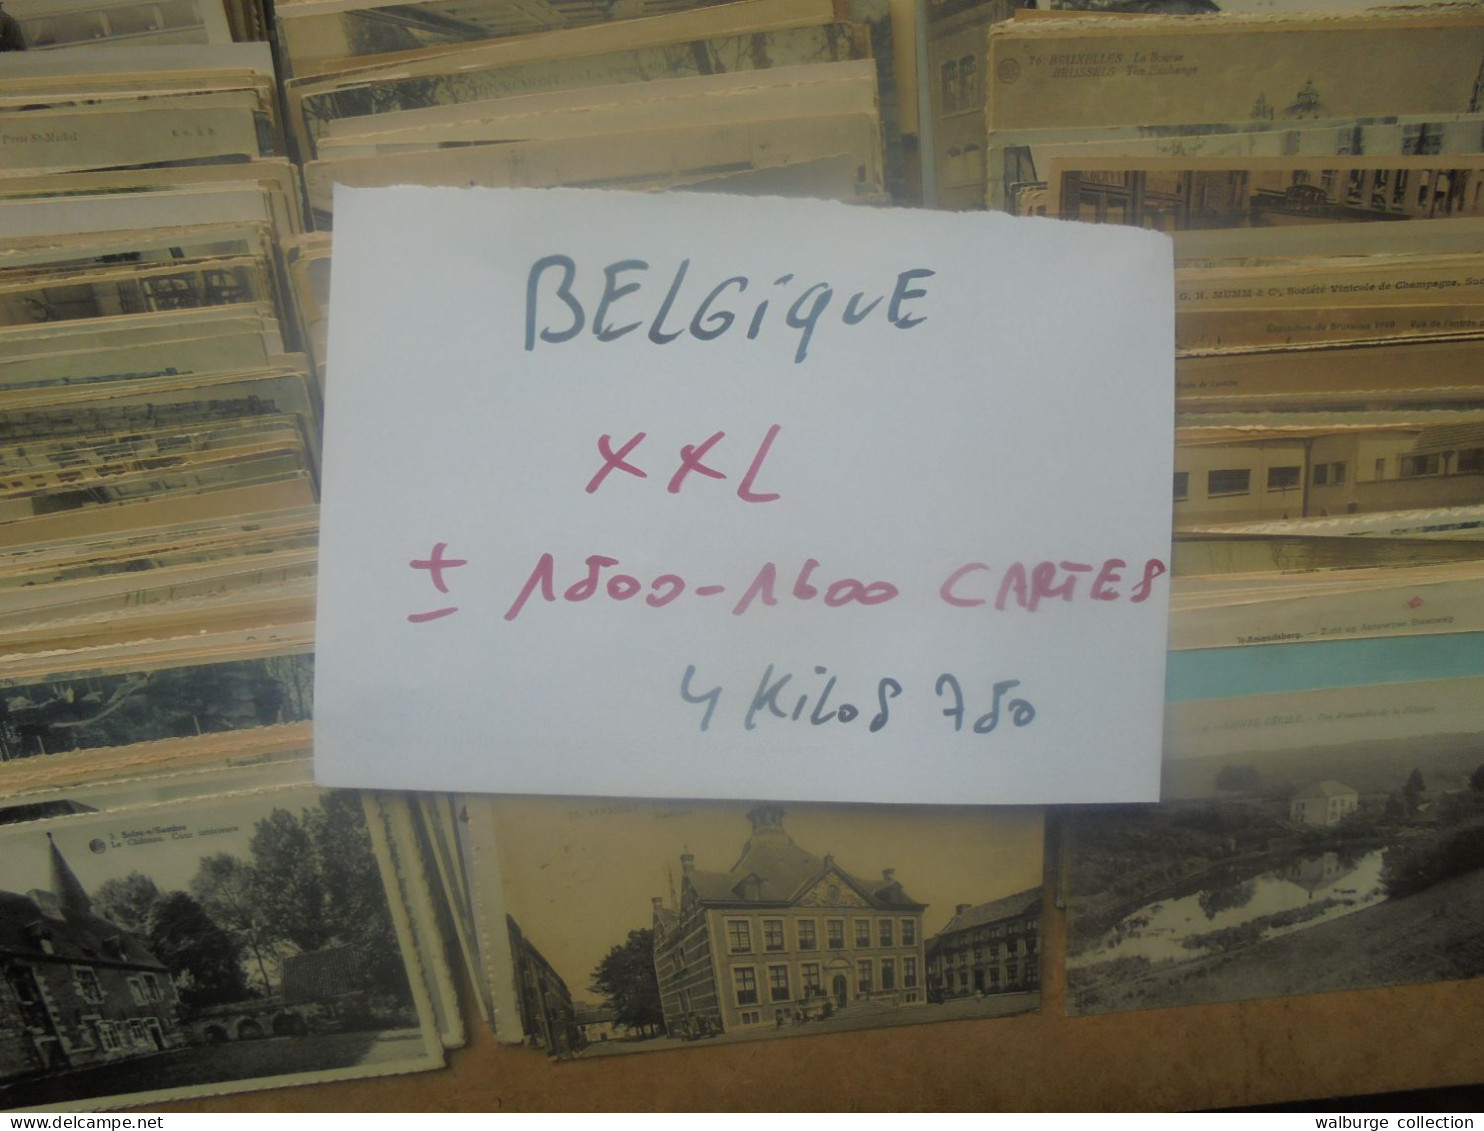 +++BELGIQUE BEAU LOT XXL ! ENVIRON 1500-1600 CARTES (Pas De Côte Belge) MAJORITES ANCIENNES+++ 4 KILOS 750 (Lire Ci-bas) - 500 CP Min.